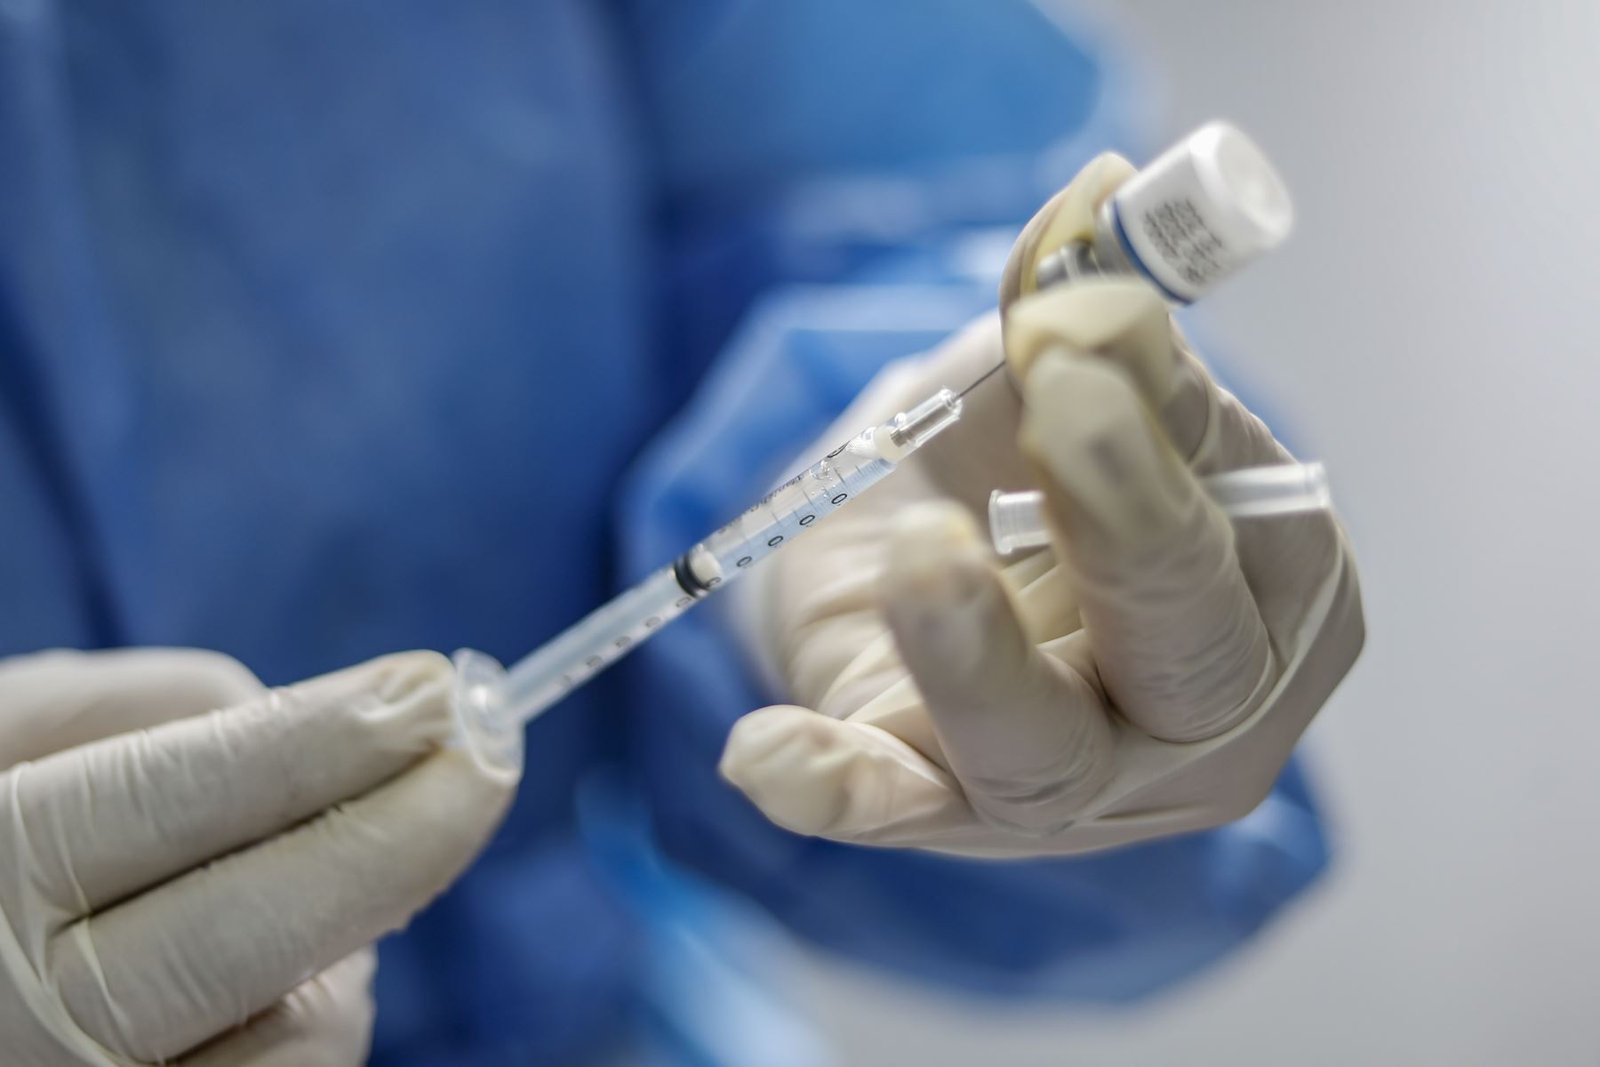 Mañana inicia inscripción de voluntarios para ensayos clínicos de vacuna contra el covid-19 en Perú